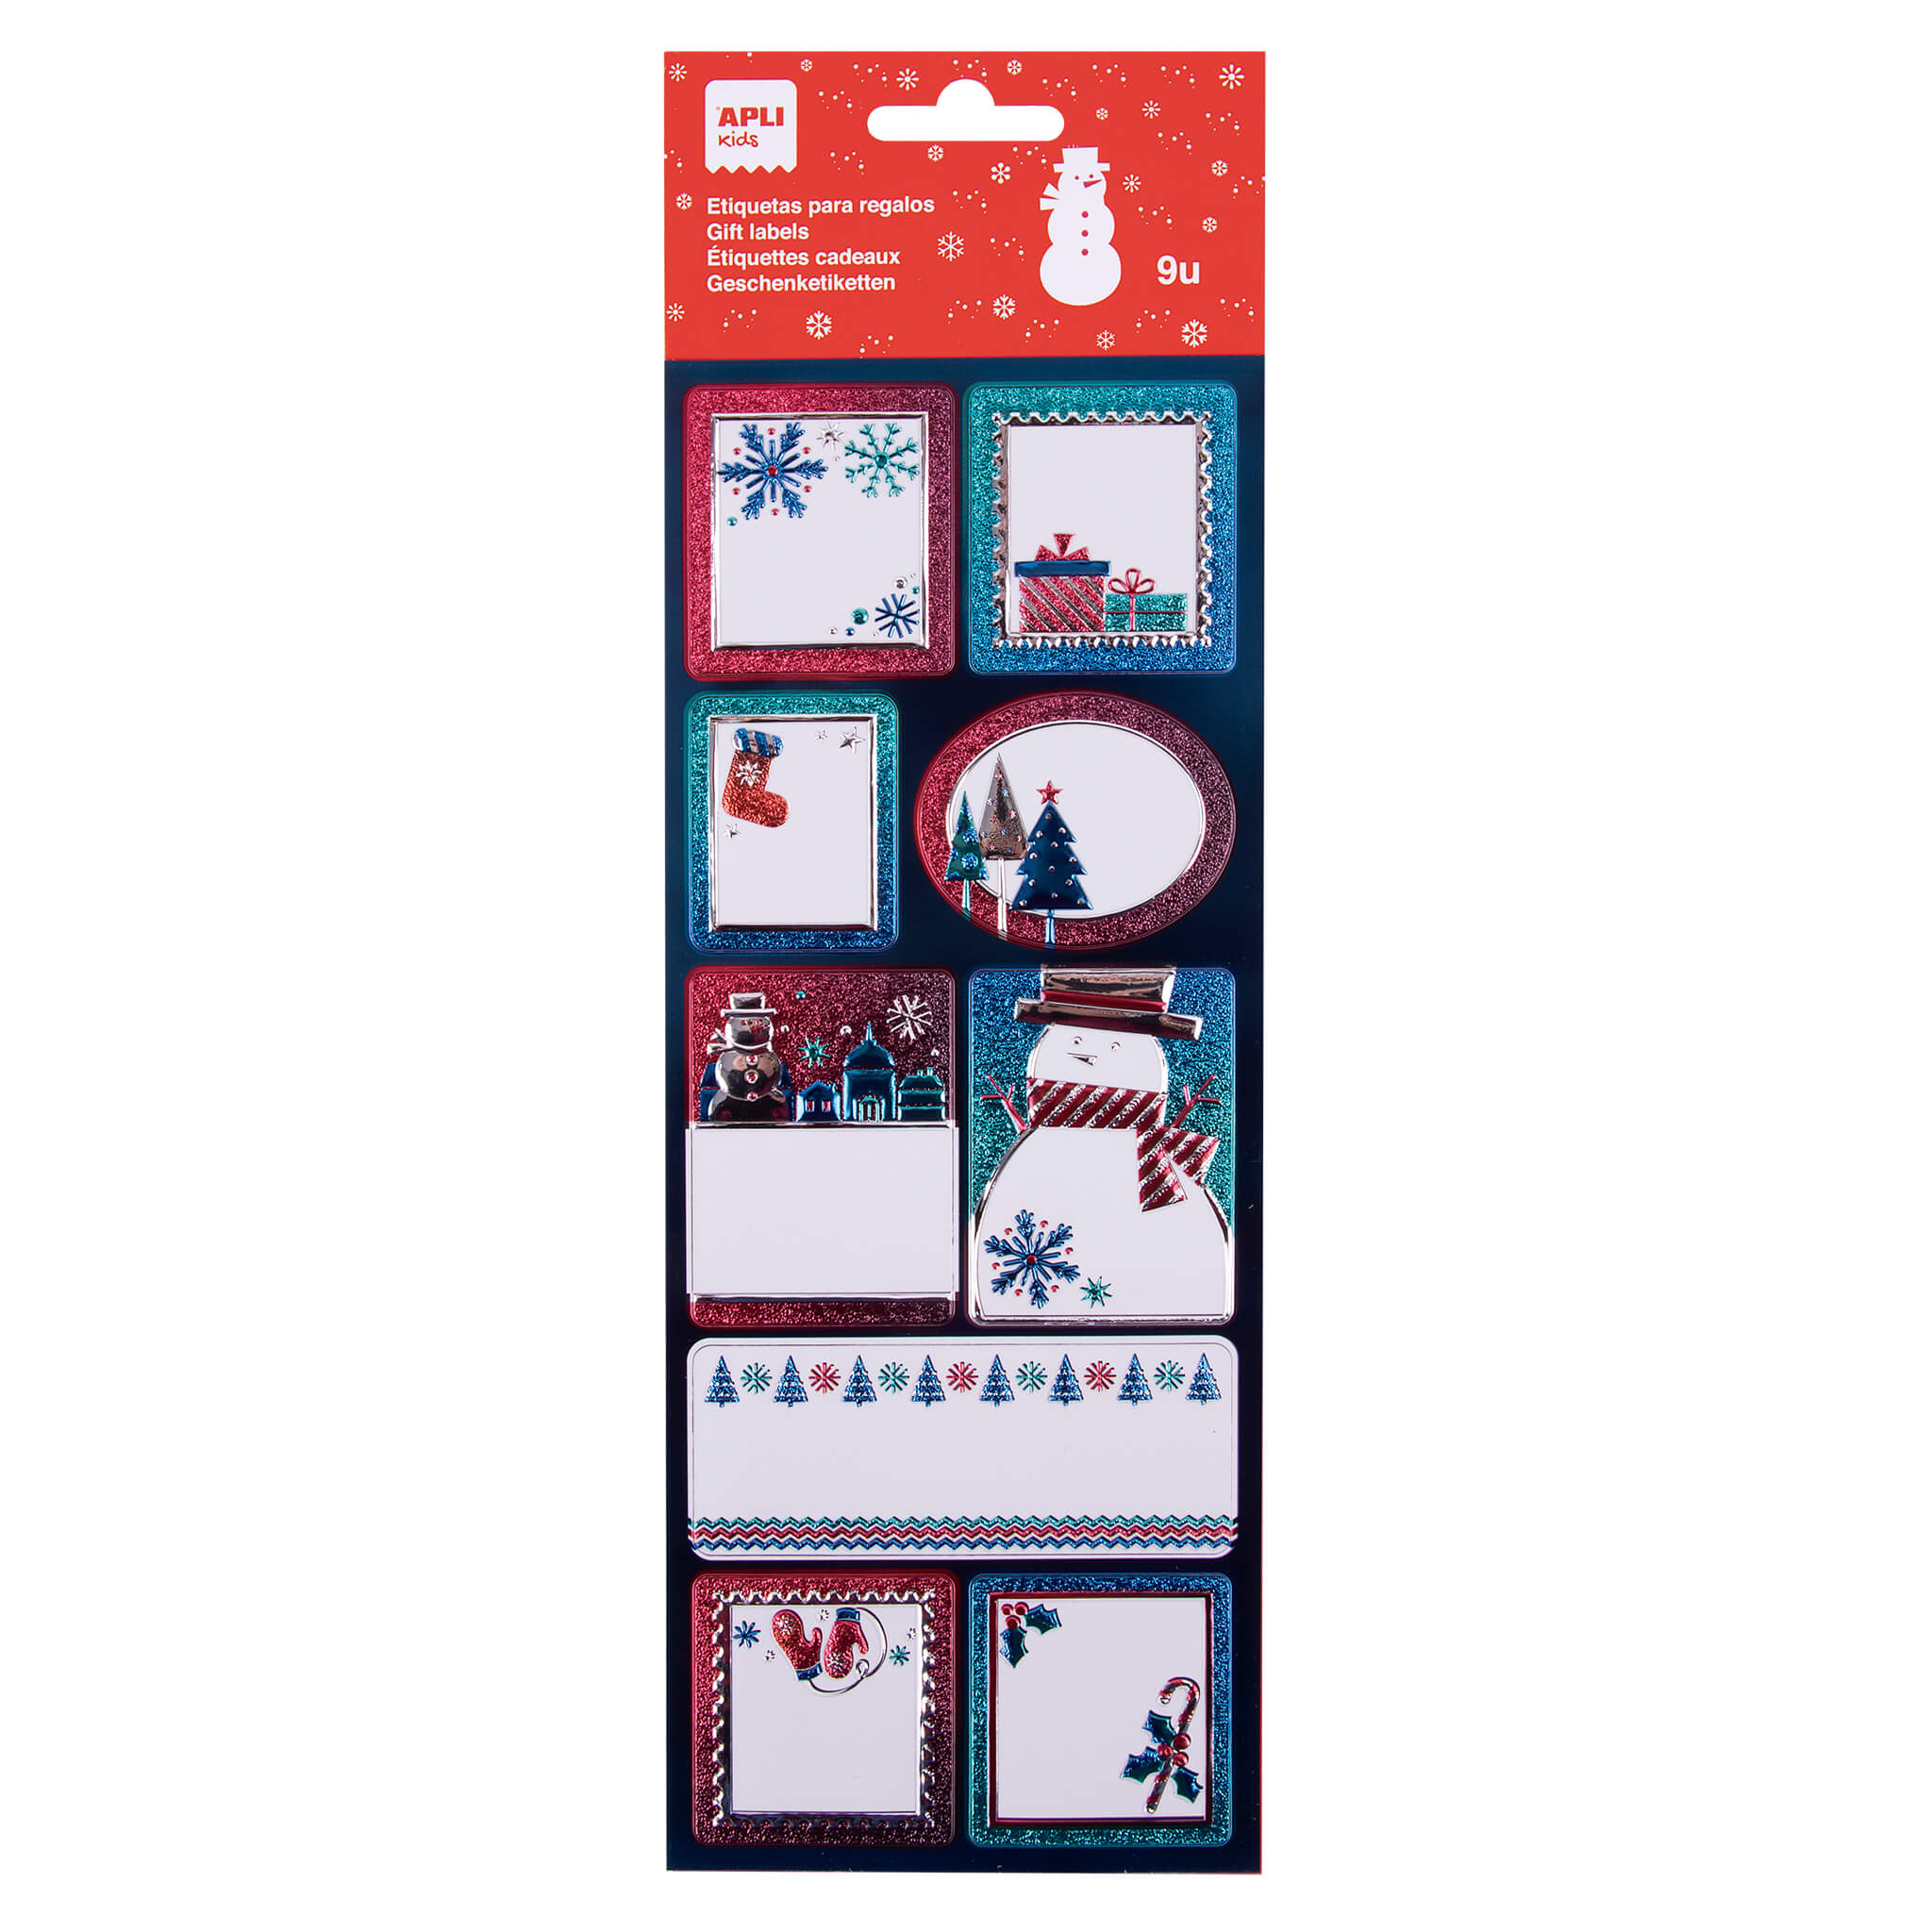 LOT de 5 Étiquettes adhésives bonhomme de neige Apli - 9 étiquettes assorties avec finition scintillante - Adhésif permanent de haute qualité - Thème de Noël - Couleur blanche